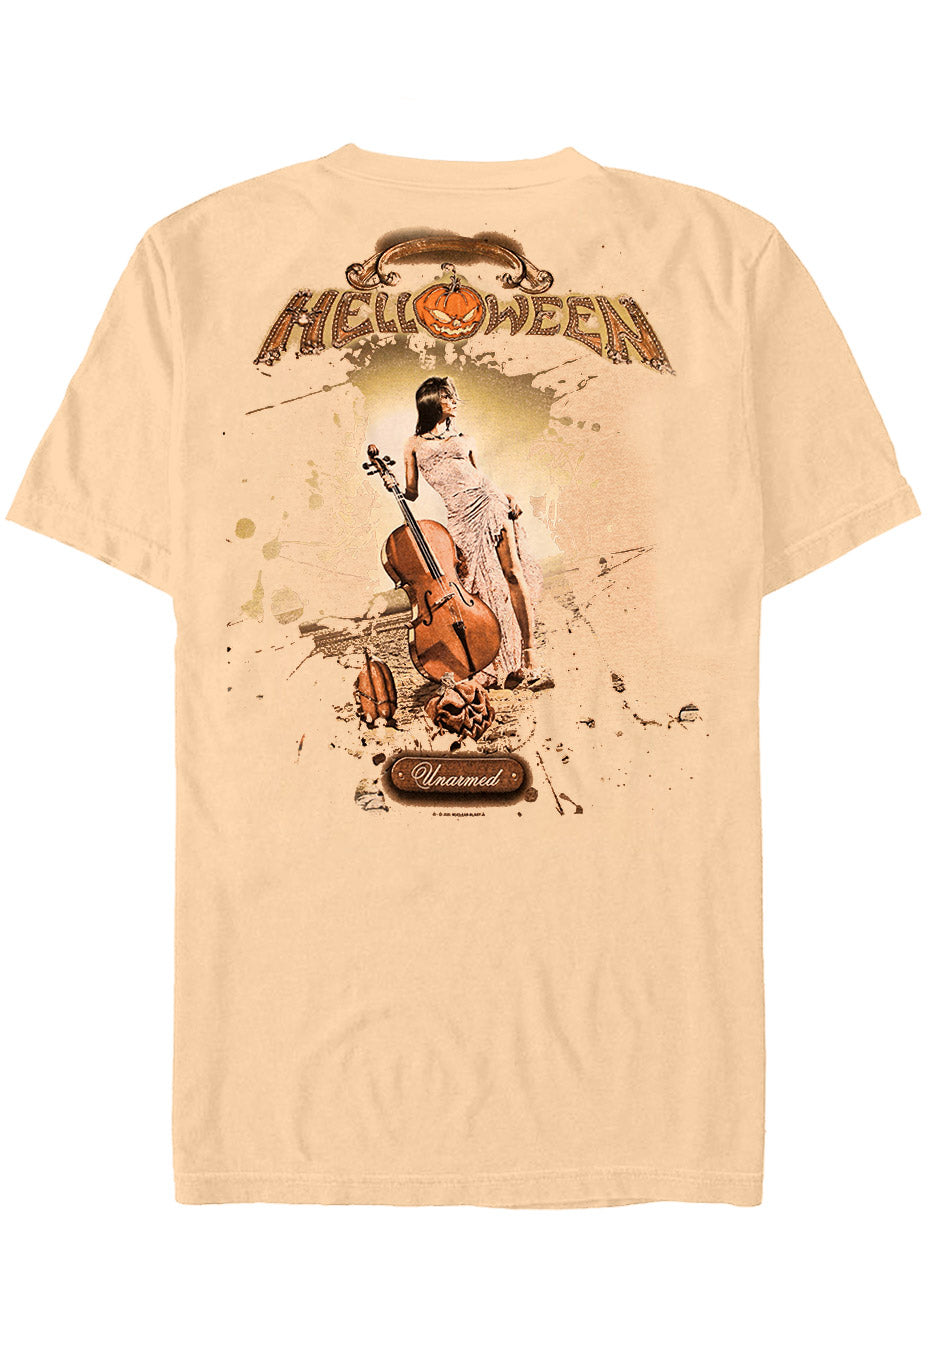 Helloween - Unarmed Sand - T-Shirt